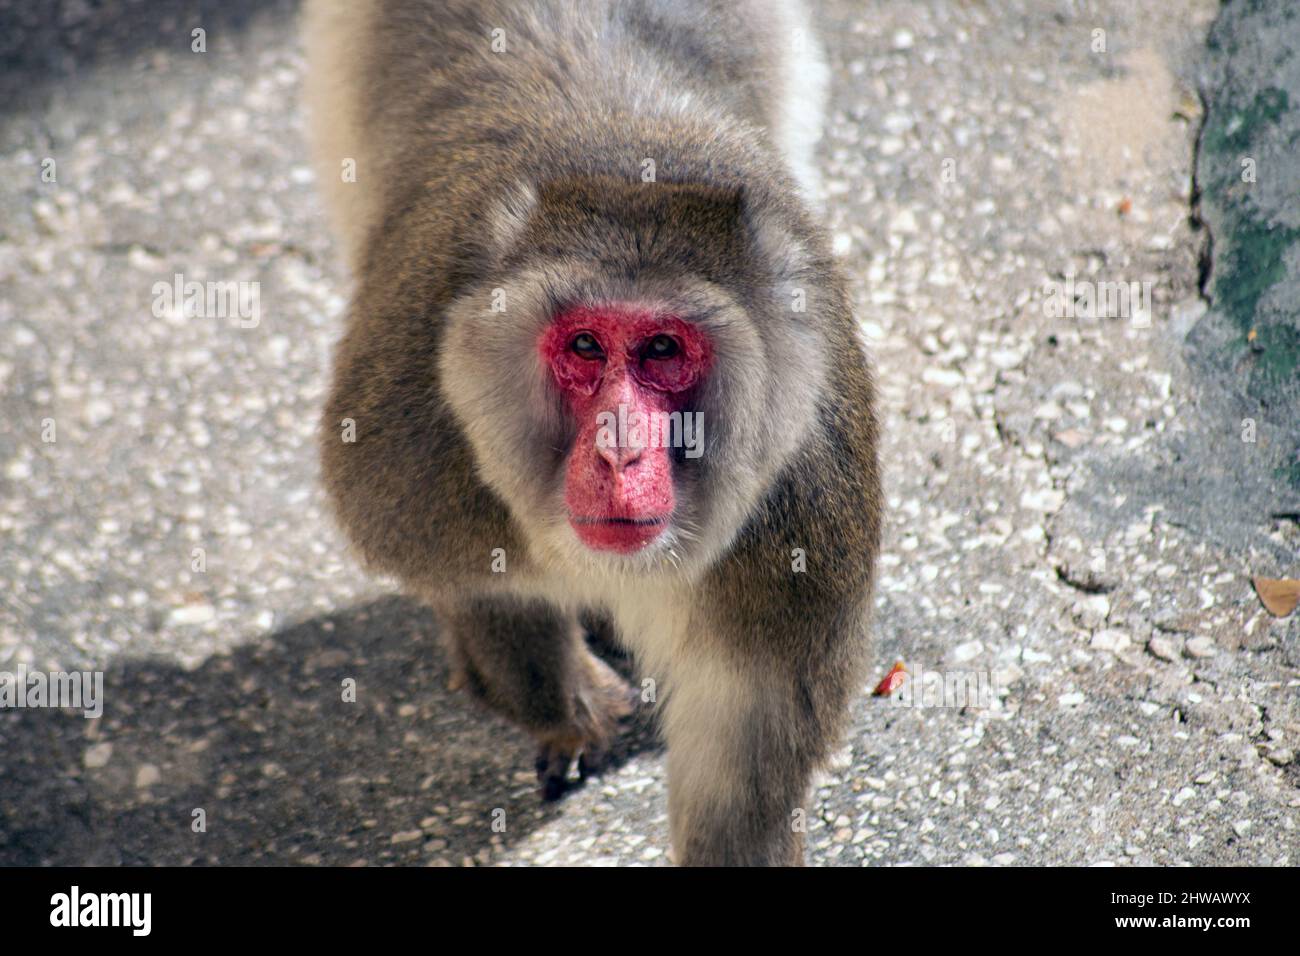 Un babouin de sexe masculin se renverse au photographe, un babouin curieux se renverse à un homme. Comportement et dominance territoriaux de babouin mâle alpha. Banque D'Images